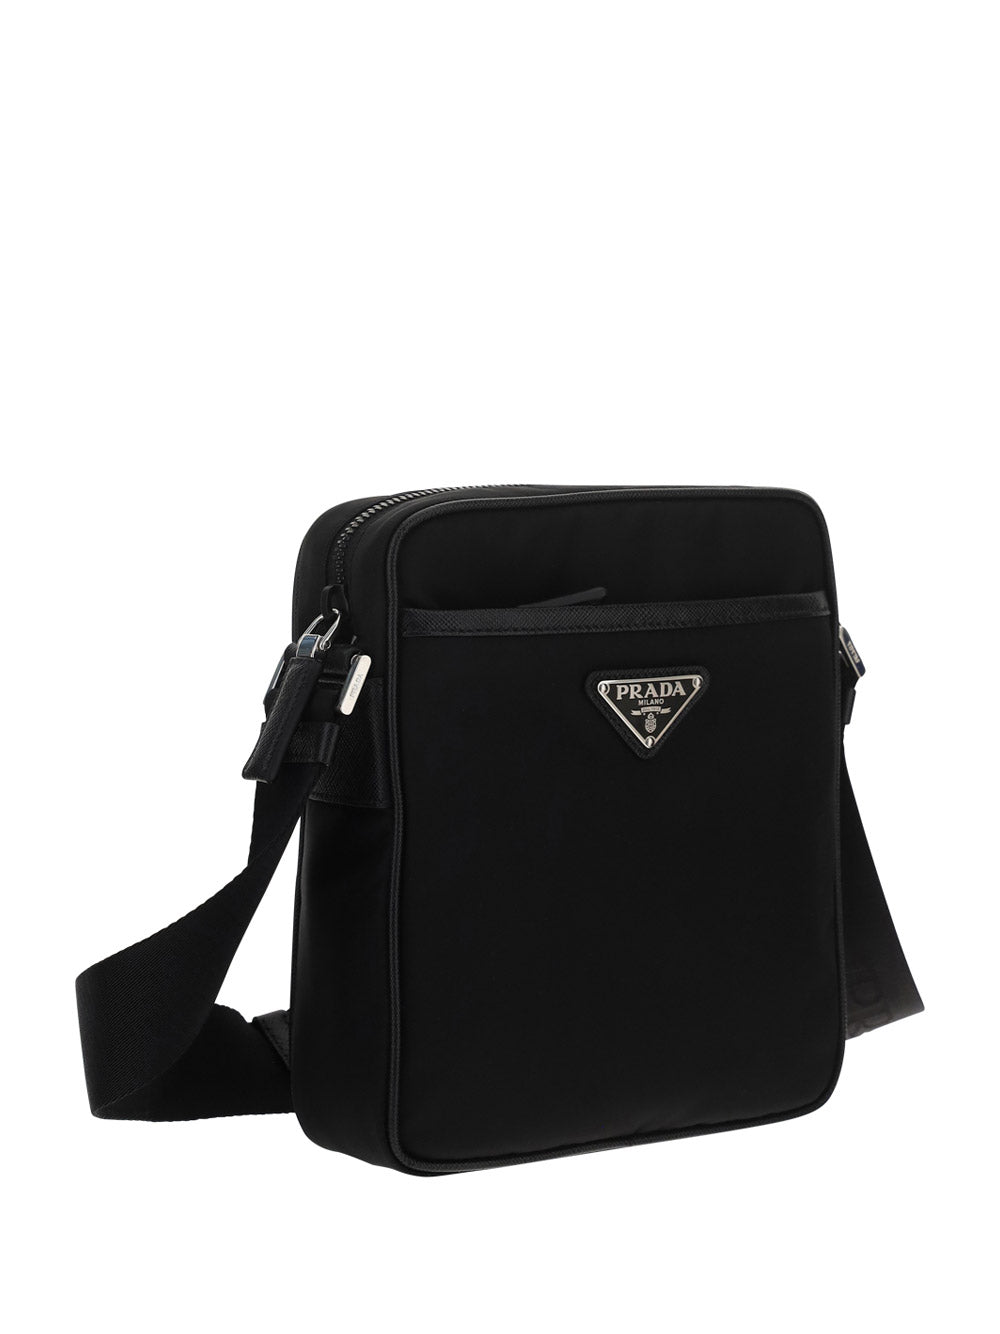 Shop Prada Re-Nylon And Saffiano Leather Tote Bag